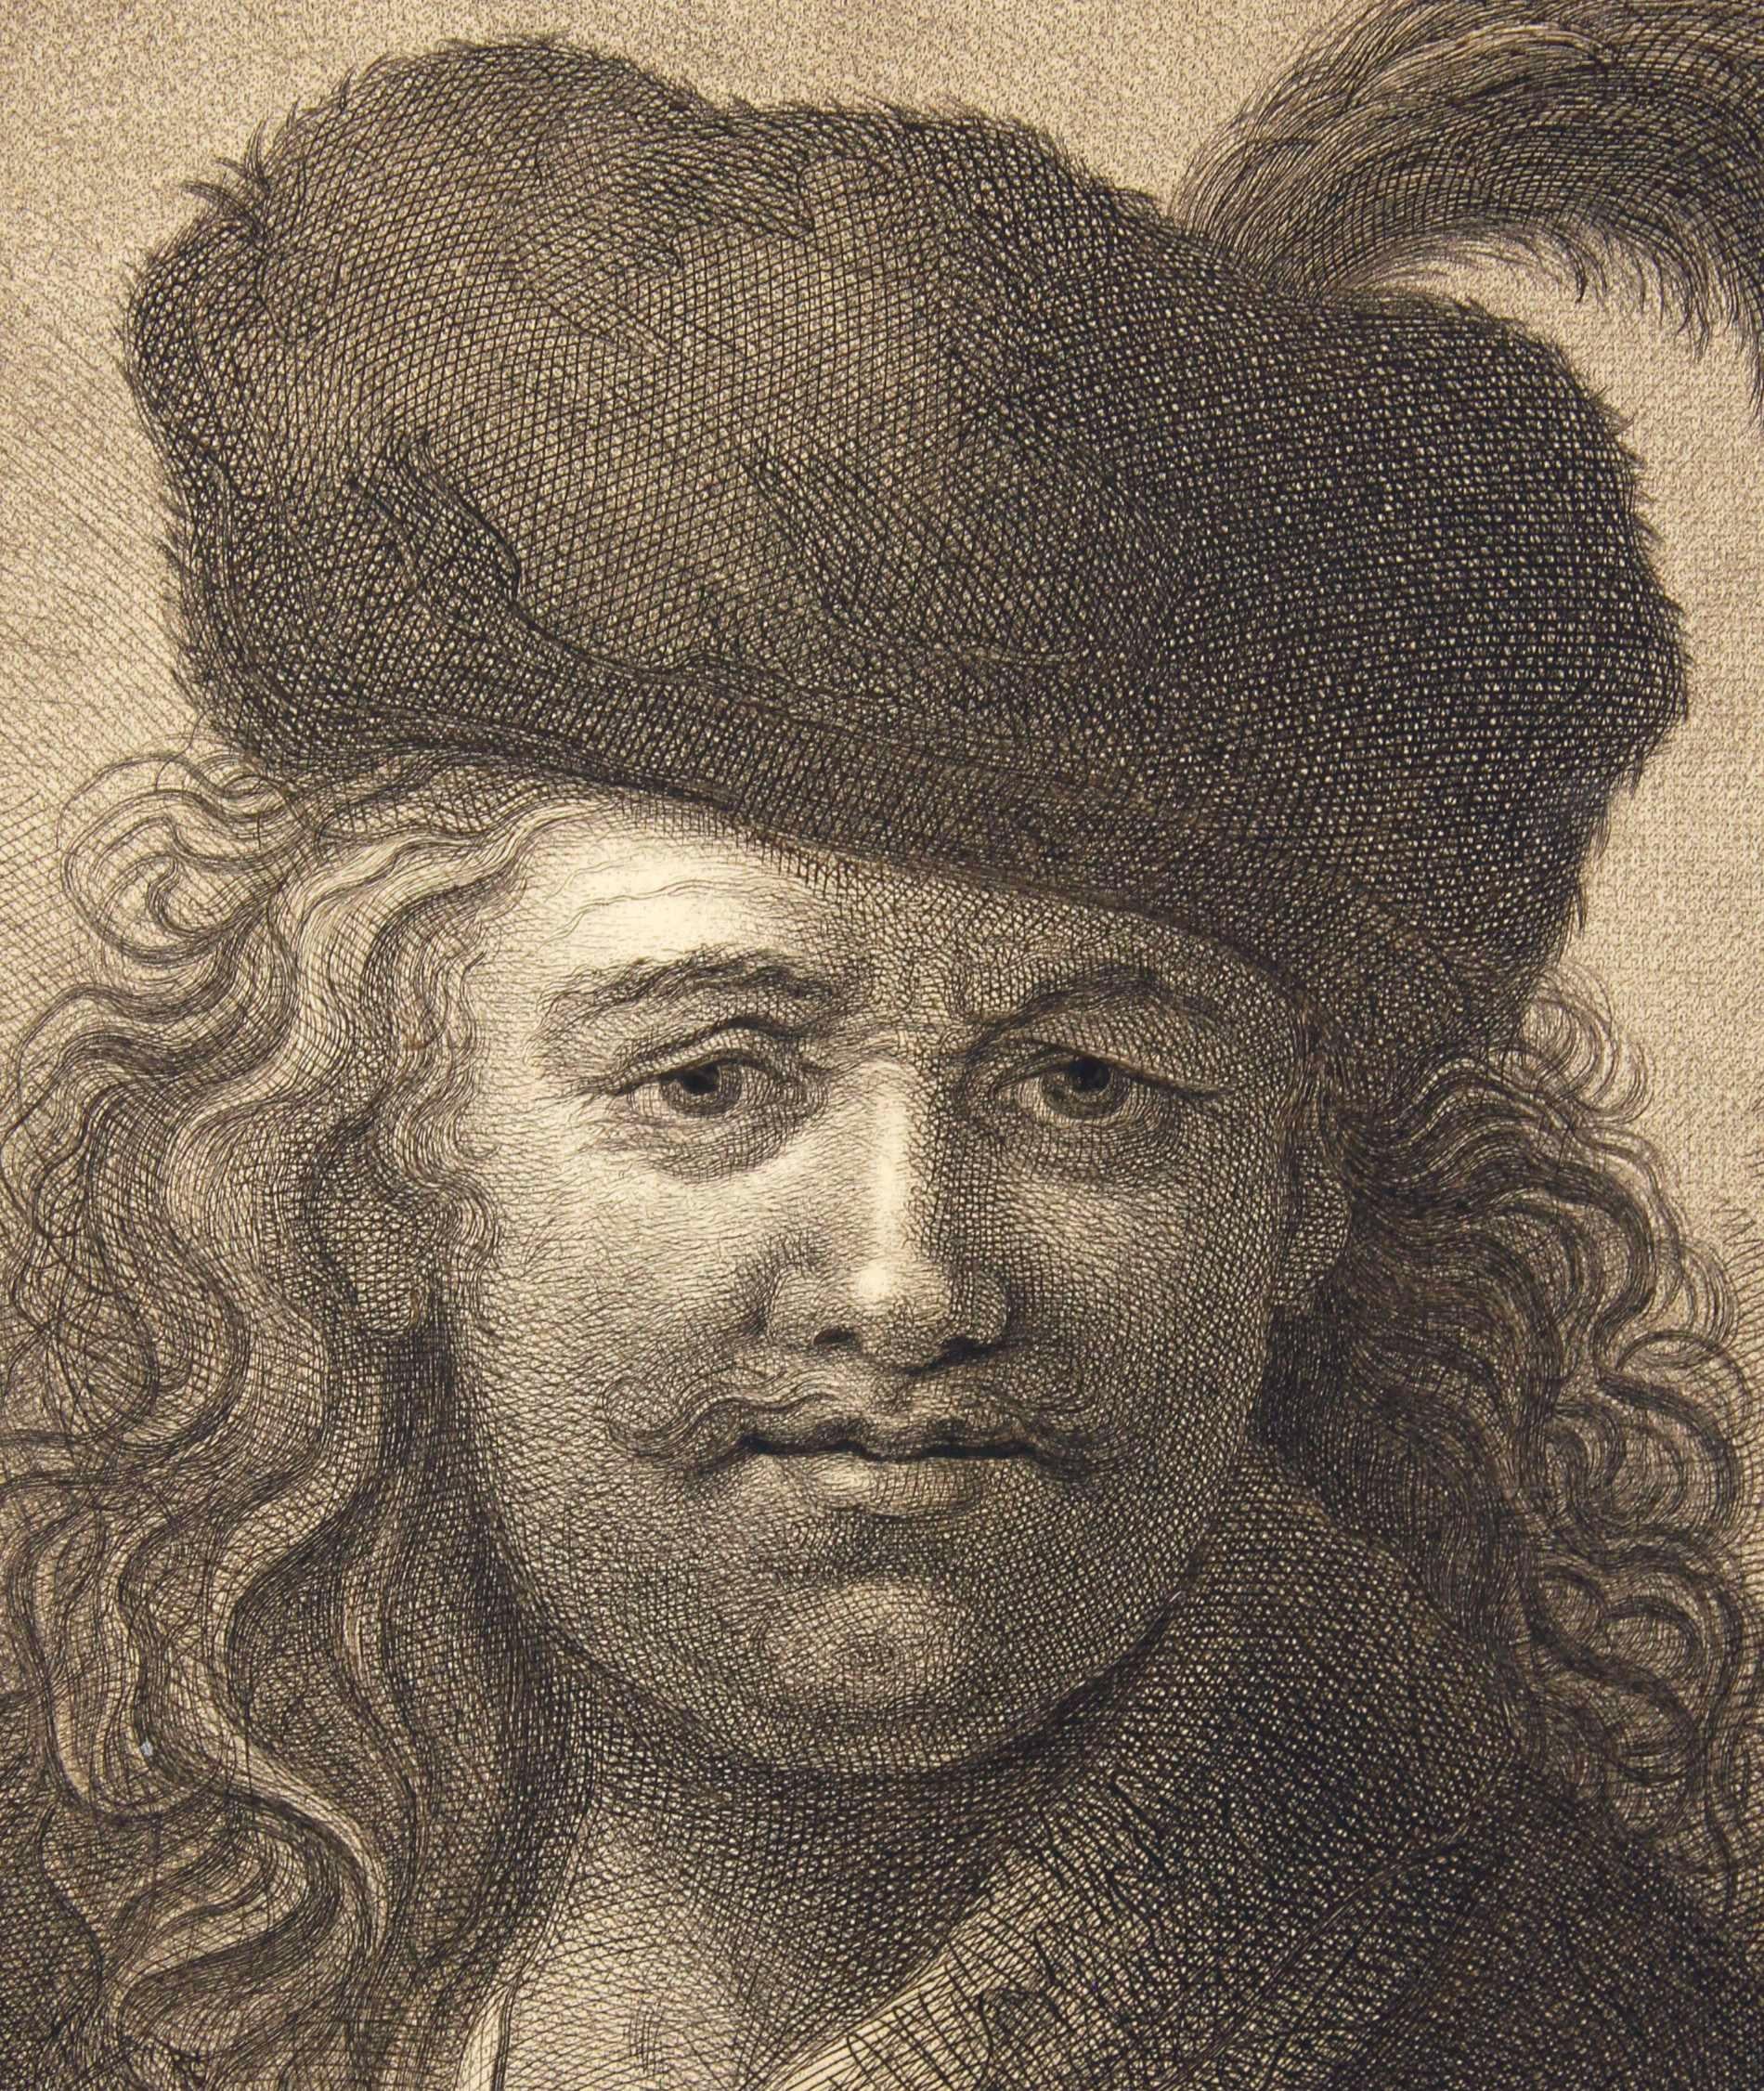 Portrait en demi-longueur d'un homme avec une barbe - Un Rembrandt du 18ème siècle  - Print de Johann Friedrich Bause